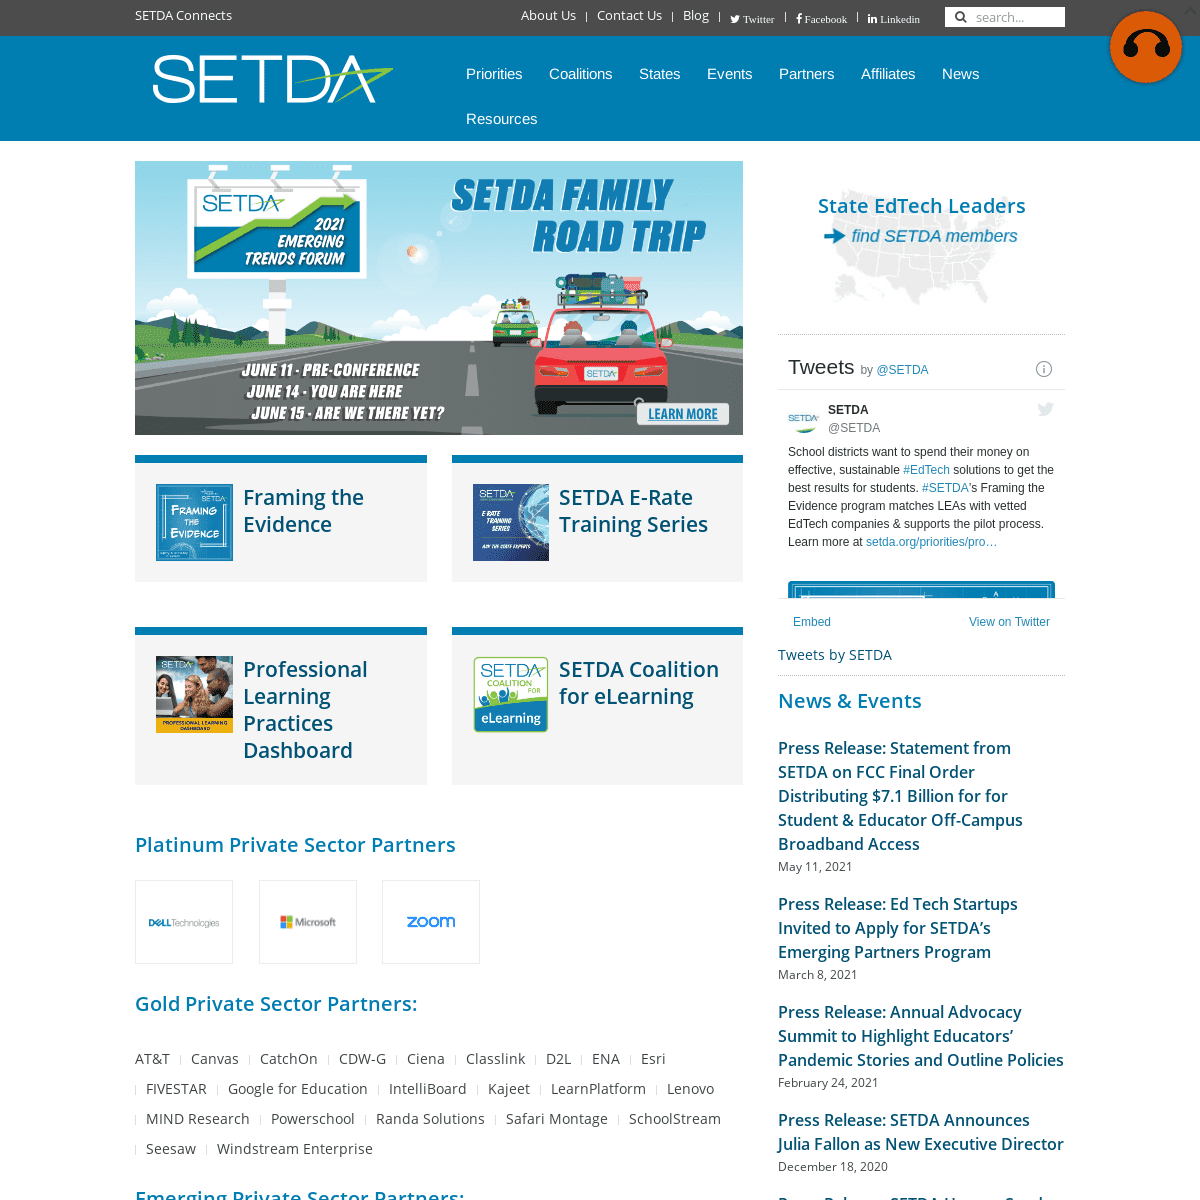 A complete backup of https://setda.org